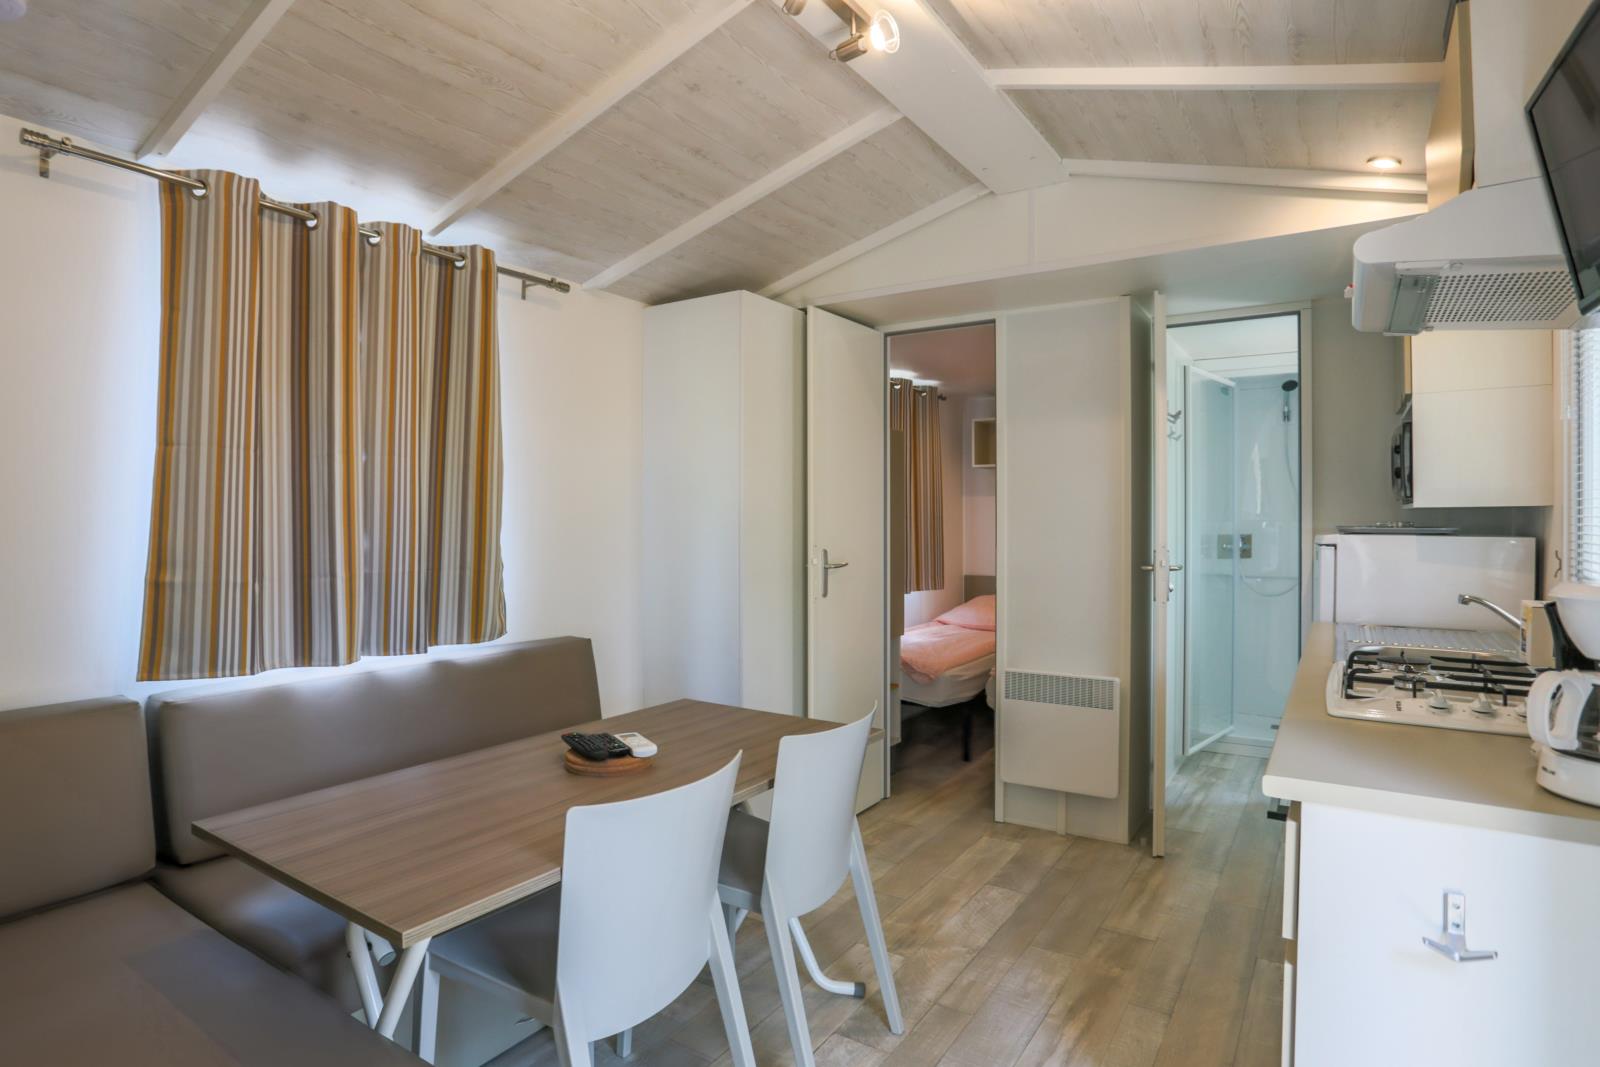 Mobil home Confort + 23m² (2 camere) – aria condizionata